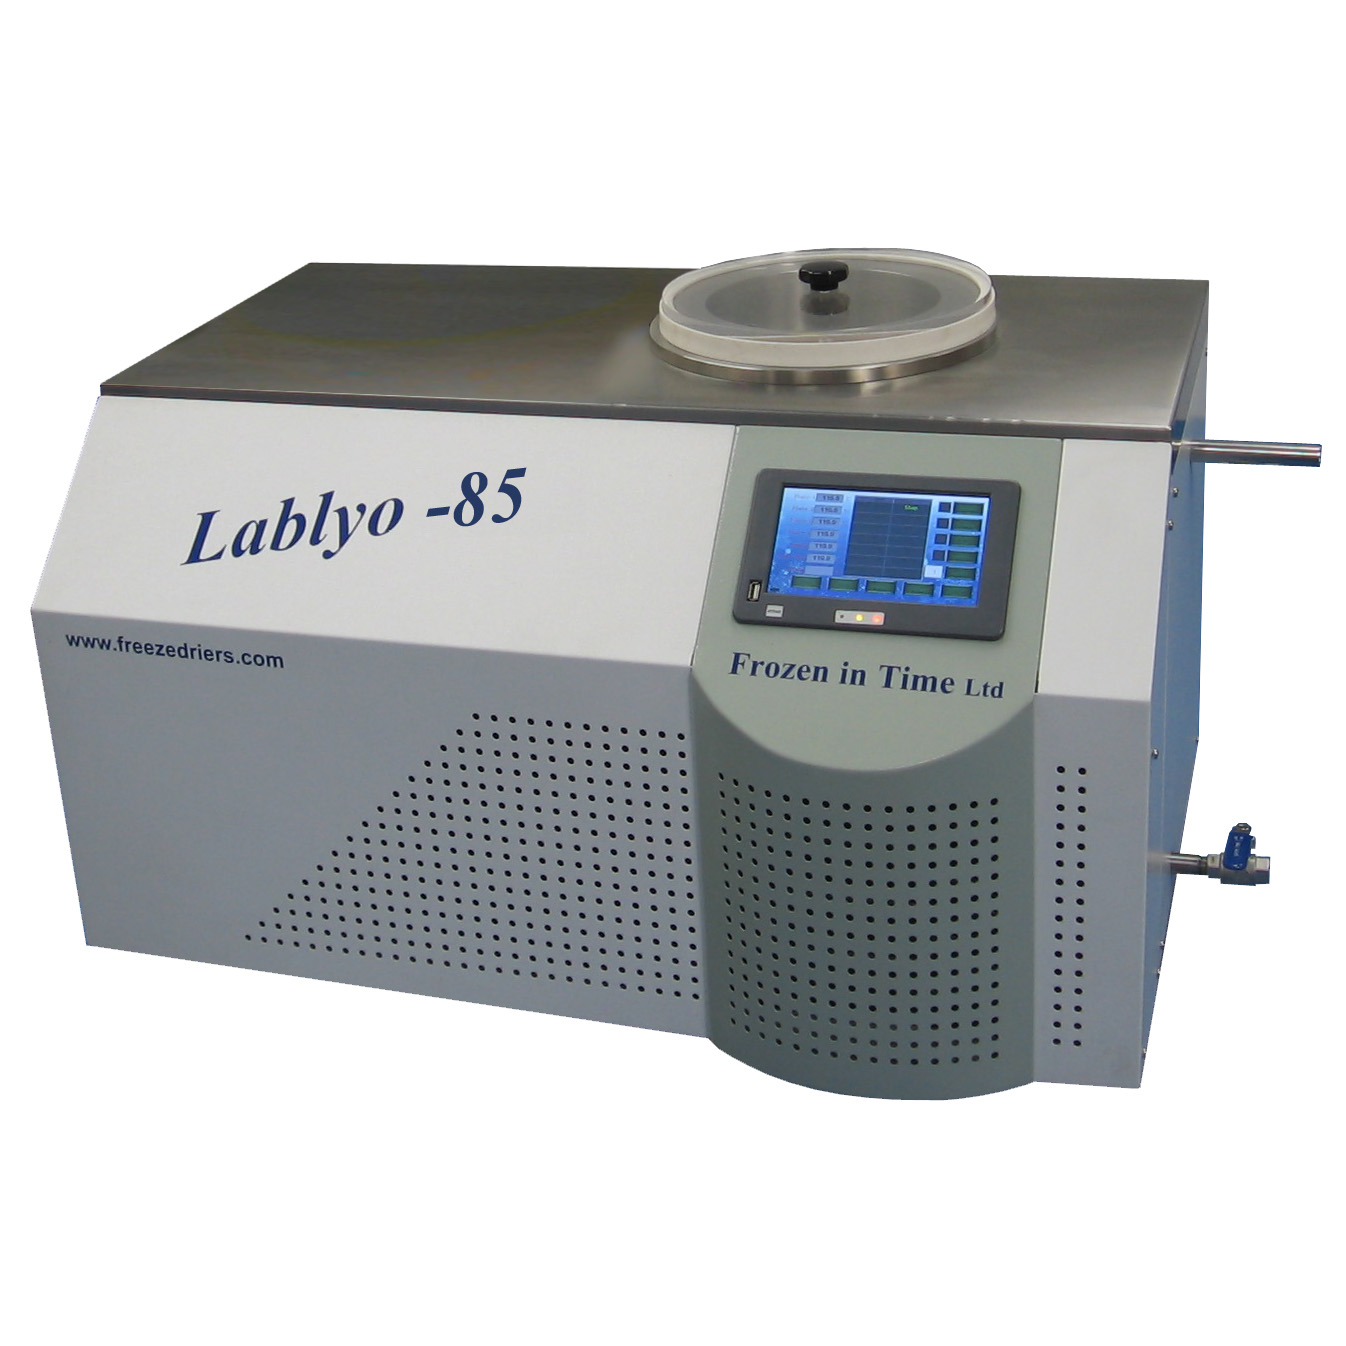 Lablyo -85 freeze drier